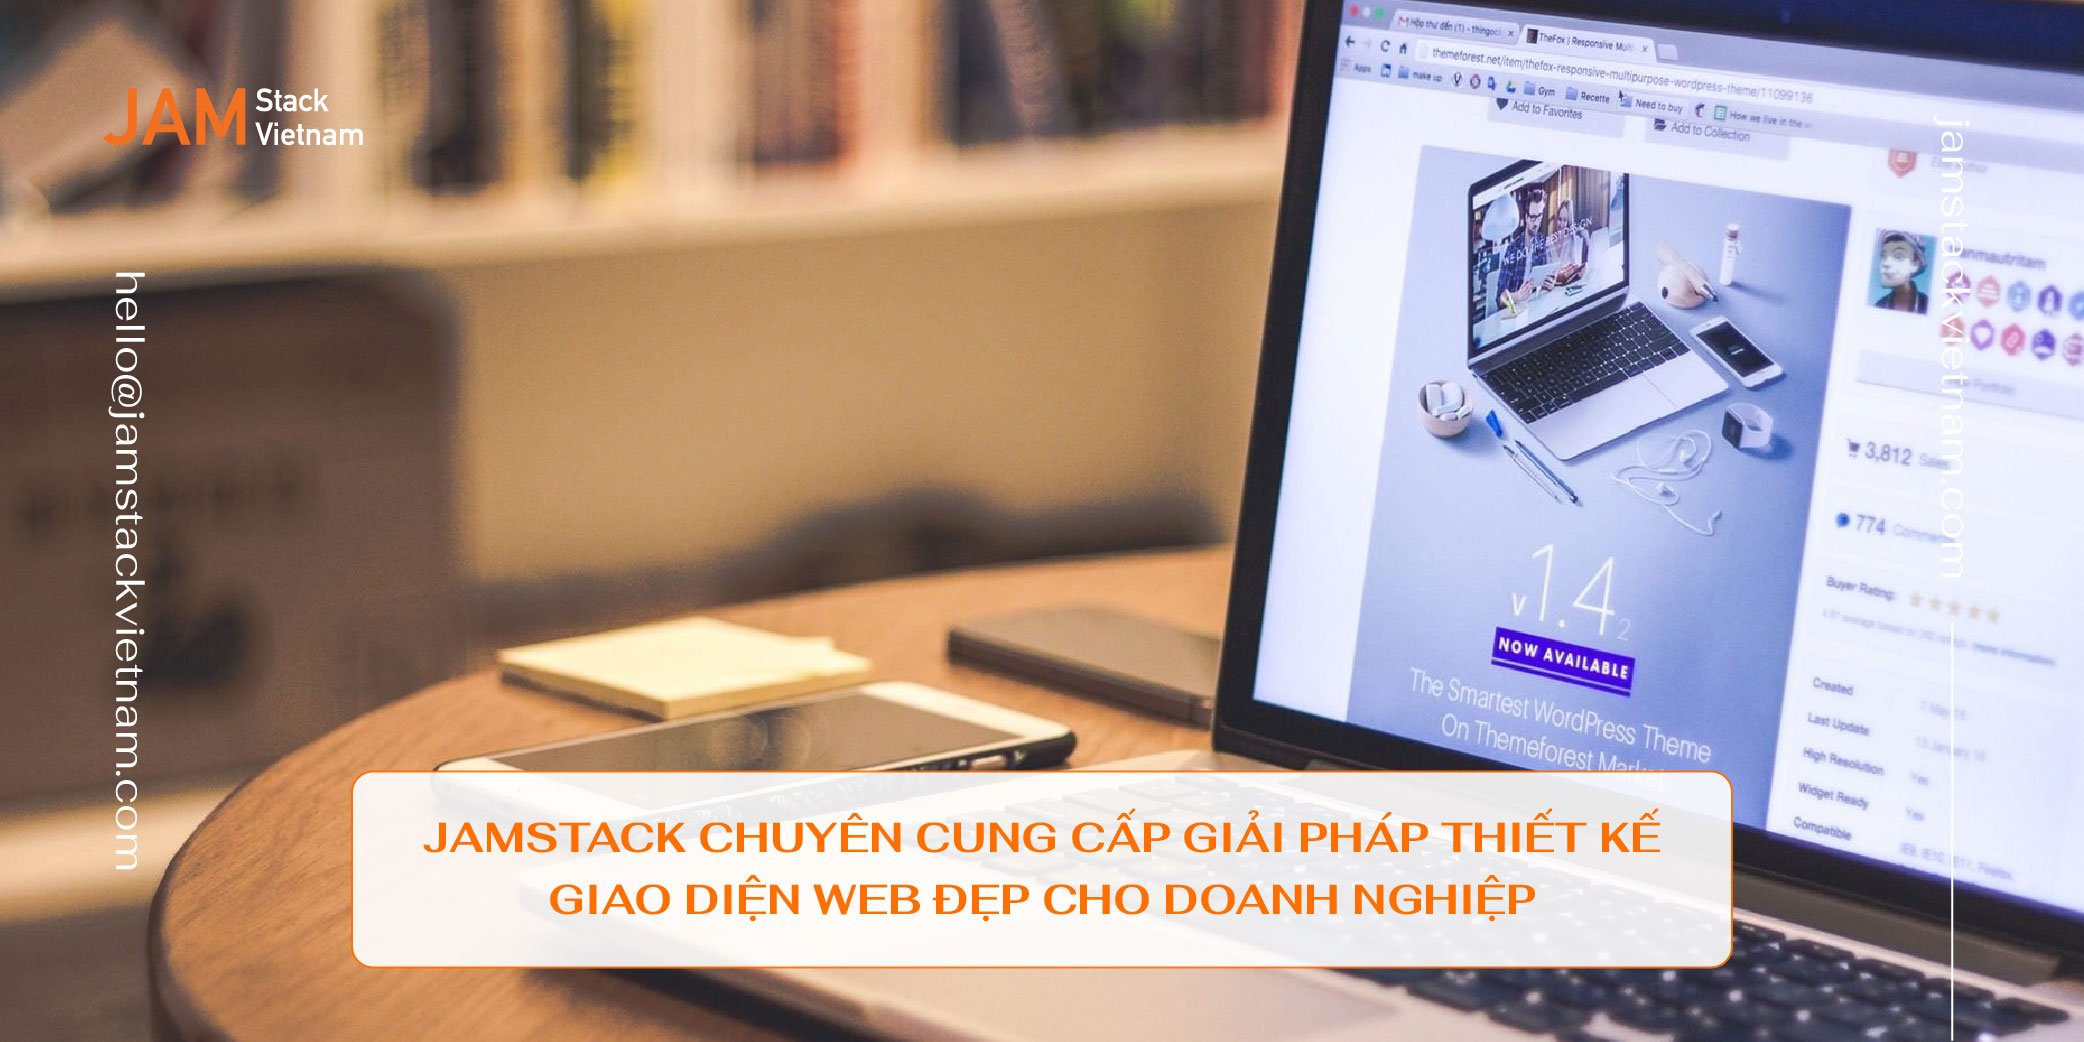 JAMstack Vietnam - Đơn vị chuyên cung cấp giải pháp thiết kế giao diện web đẹp cho doanh nghiệp